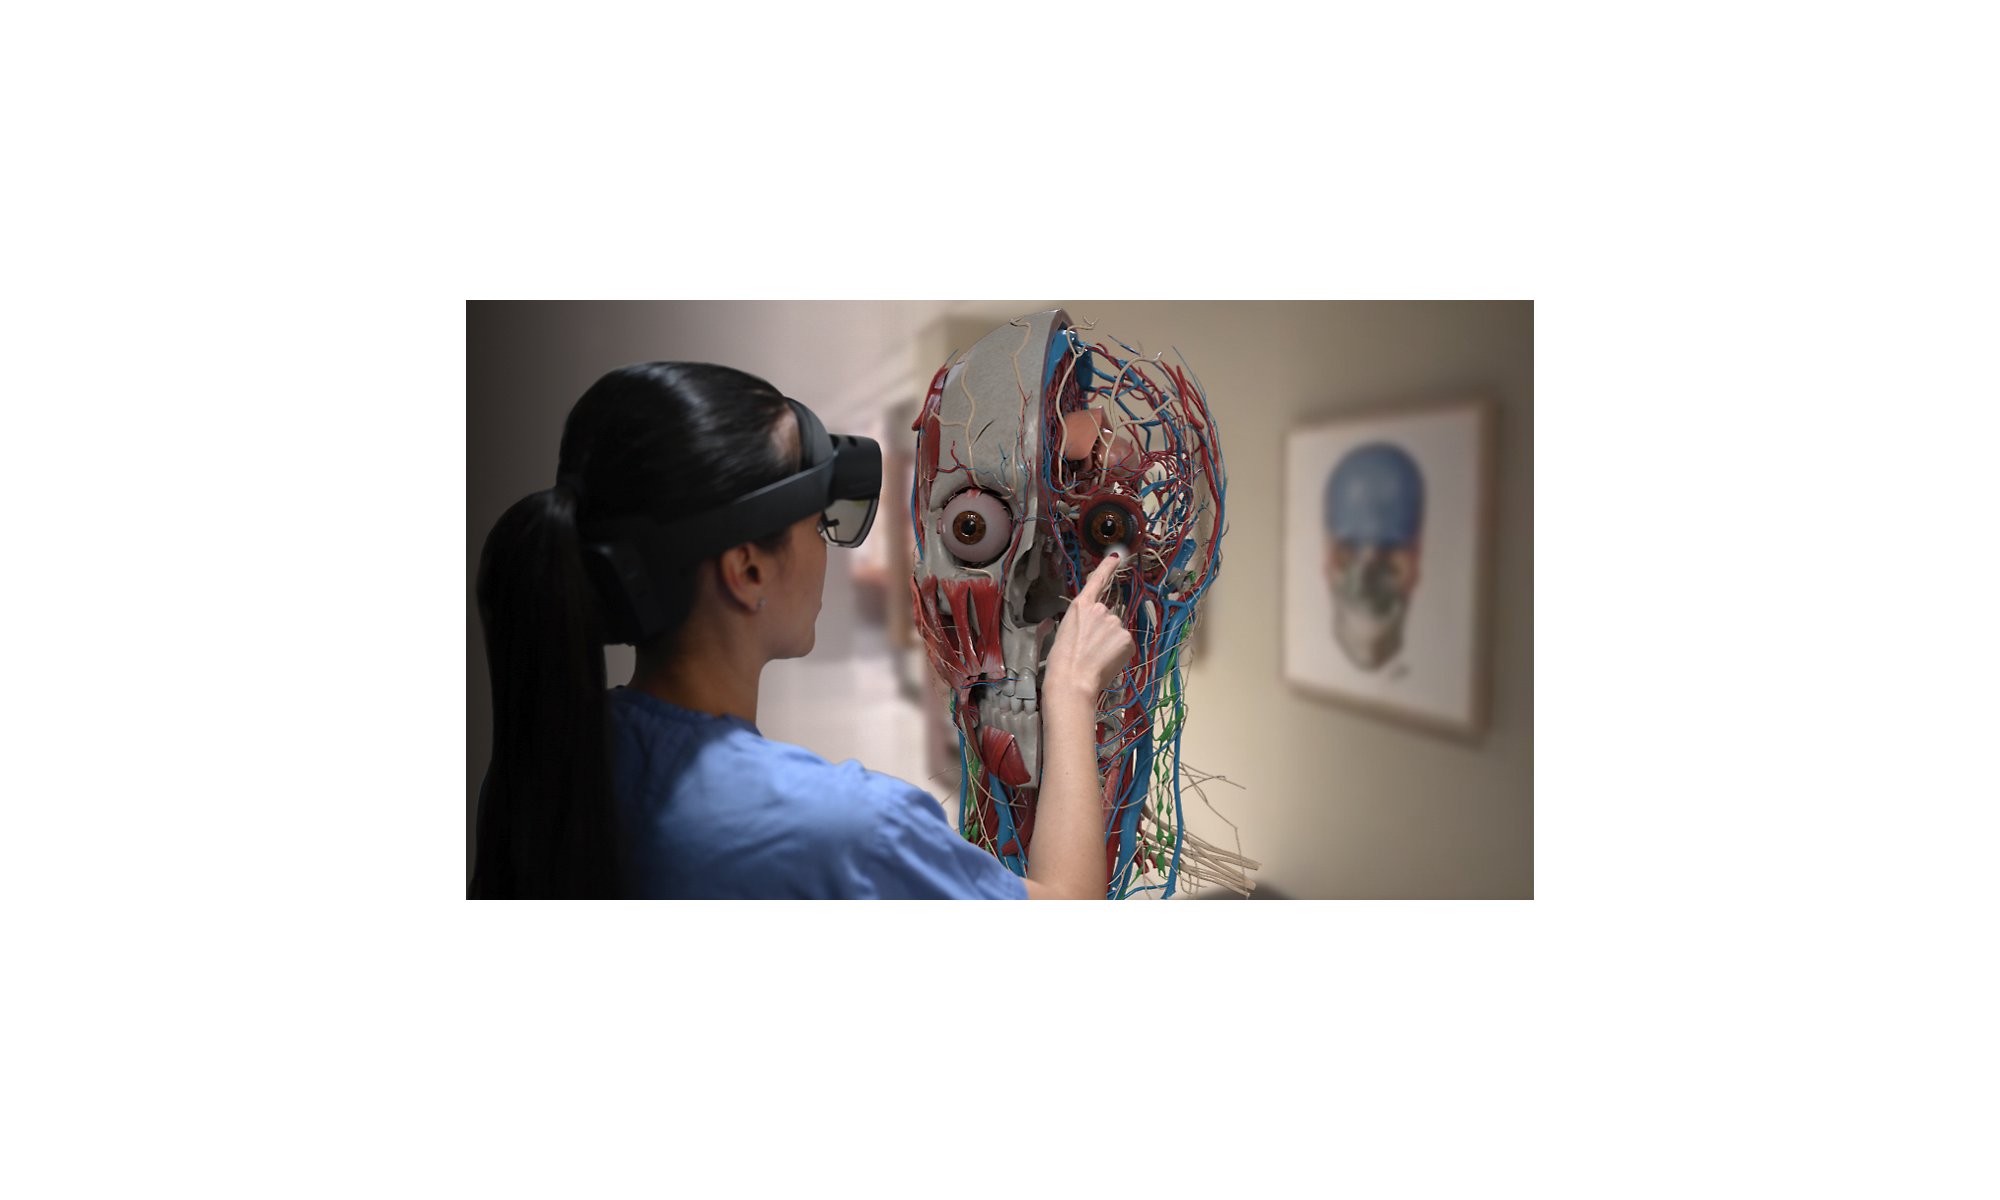 Una persona mira el interior de una cabeza humana en realidad aumentada con HoloLens 2.